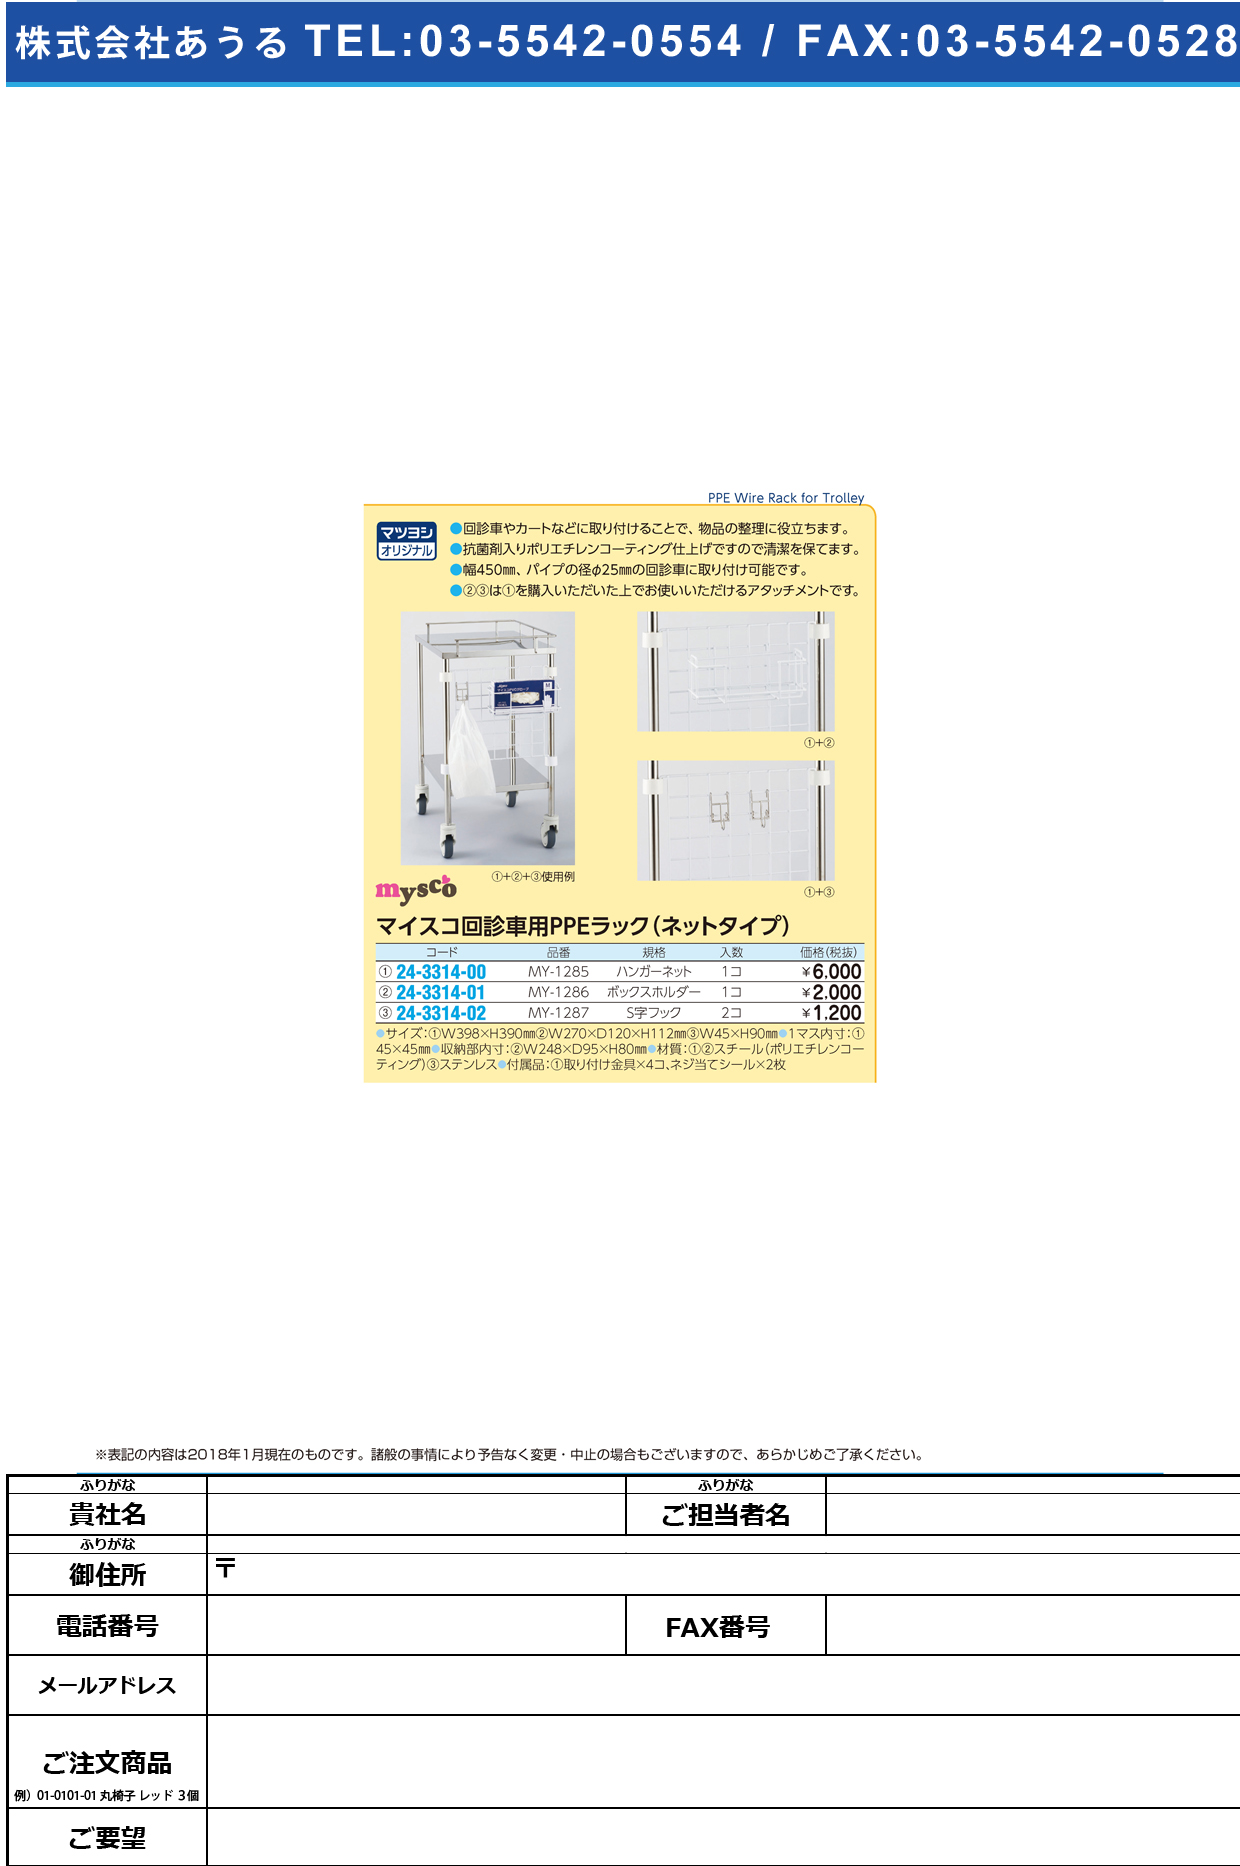 (24-3314-00)回診車用ＰＰＥラックハンガーネット MY-1285 PPEﾗｯｸﾊﾝｶﾞｰﾈｯﾄ【1個単位】【2019年カタログ商品】